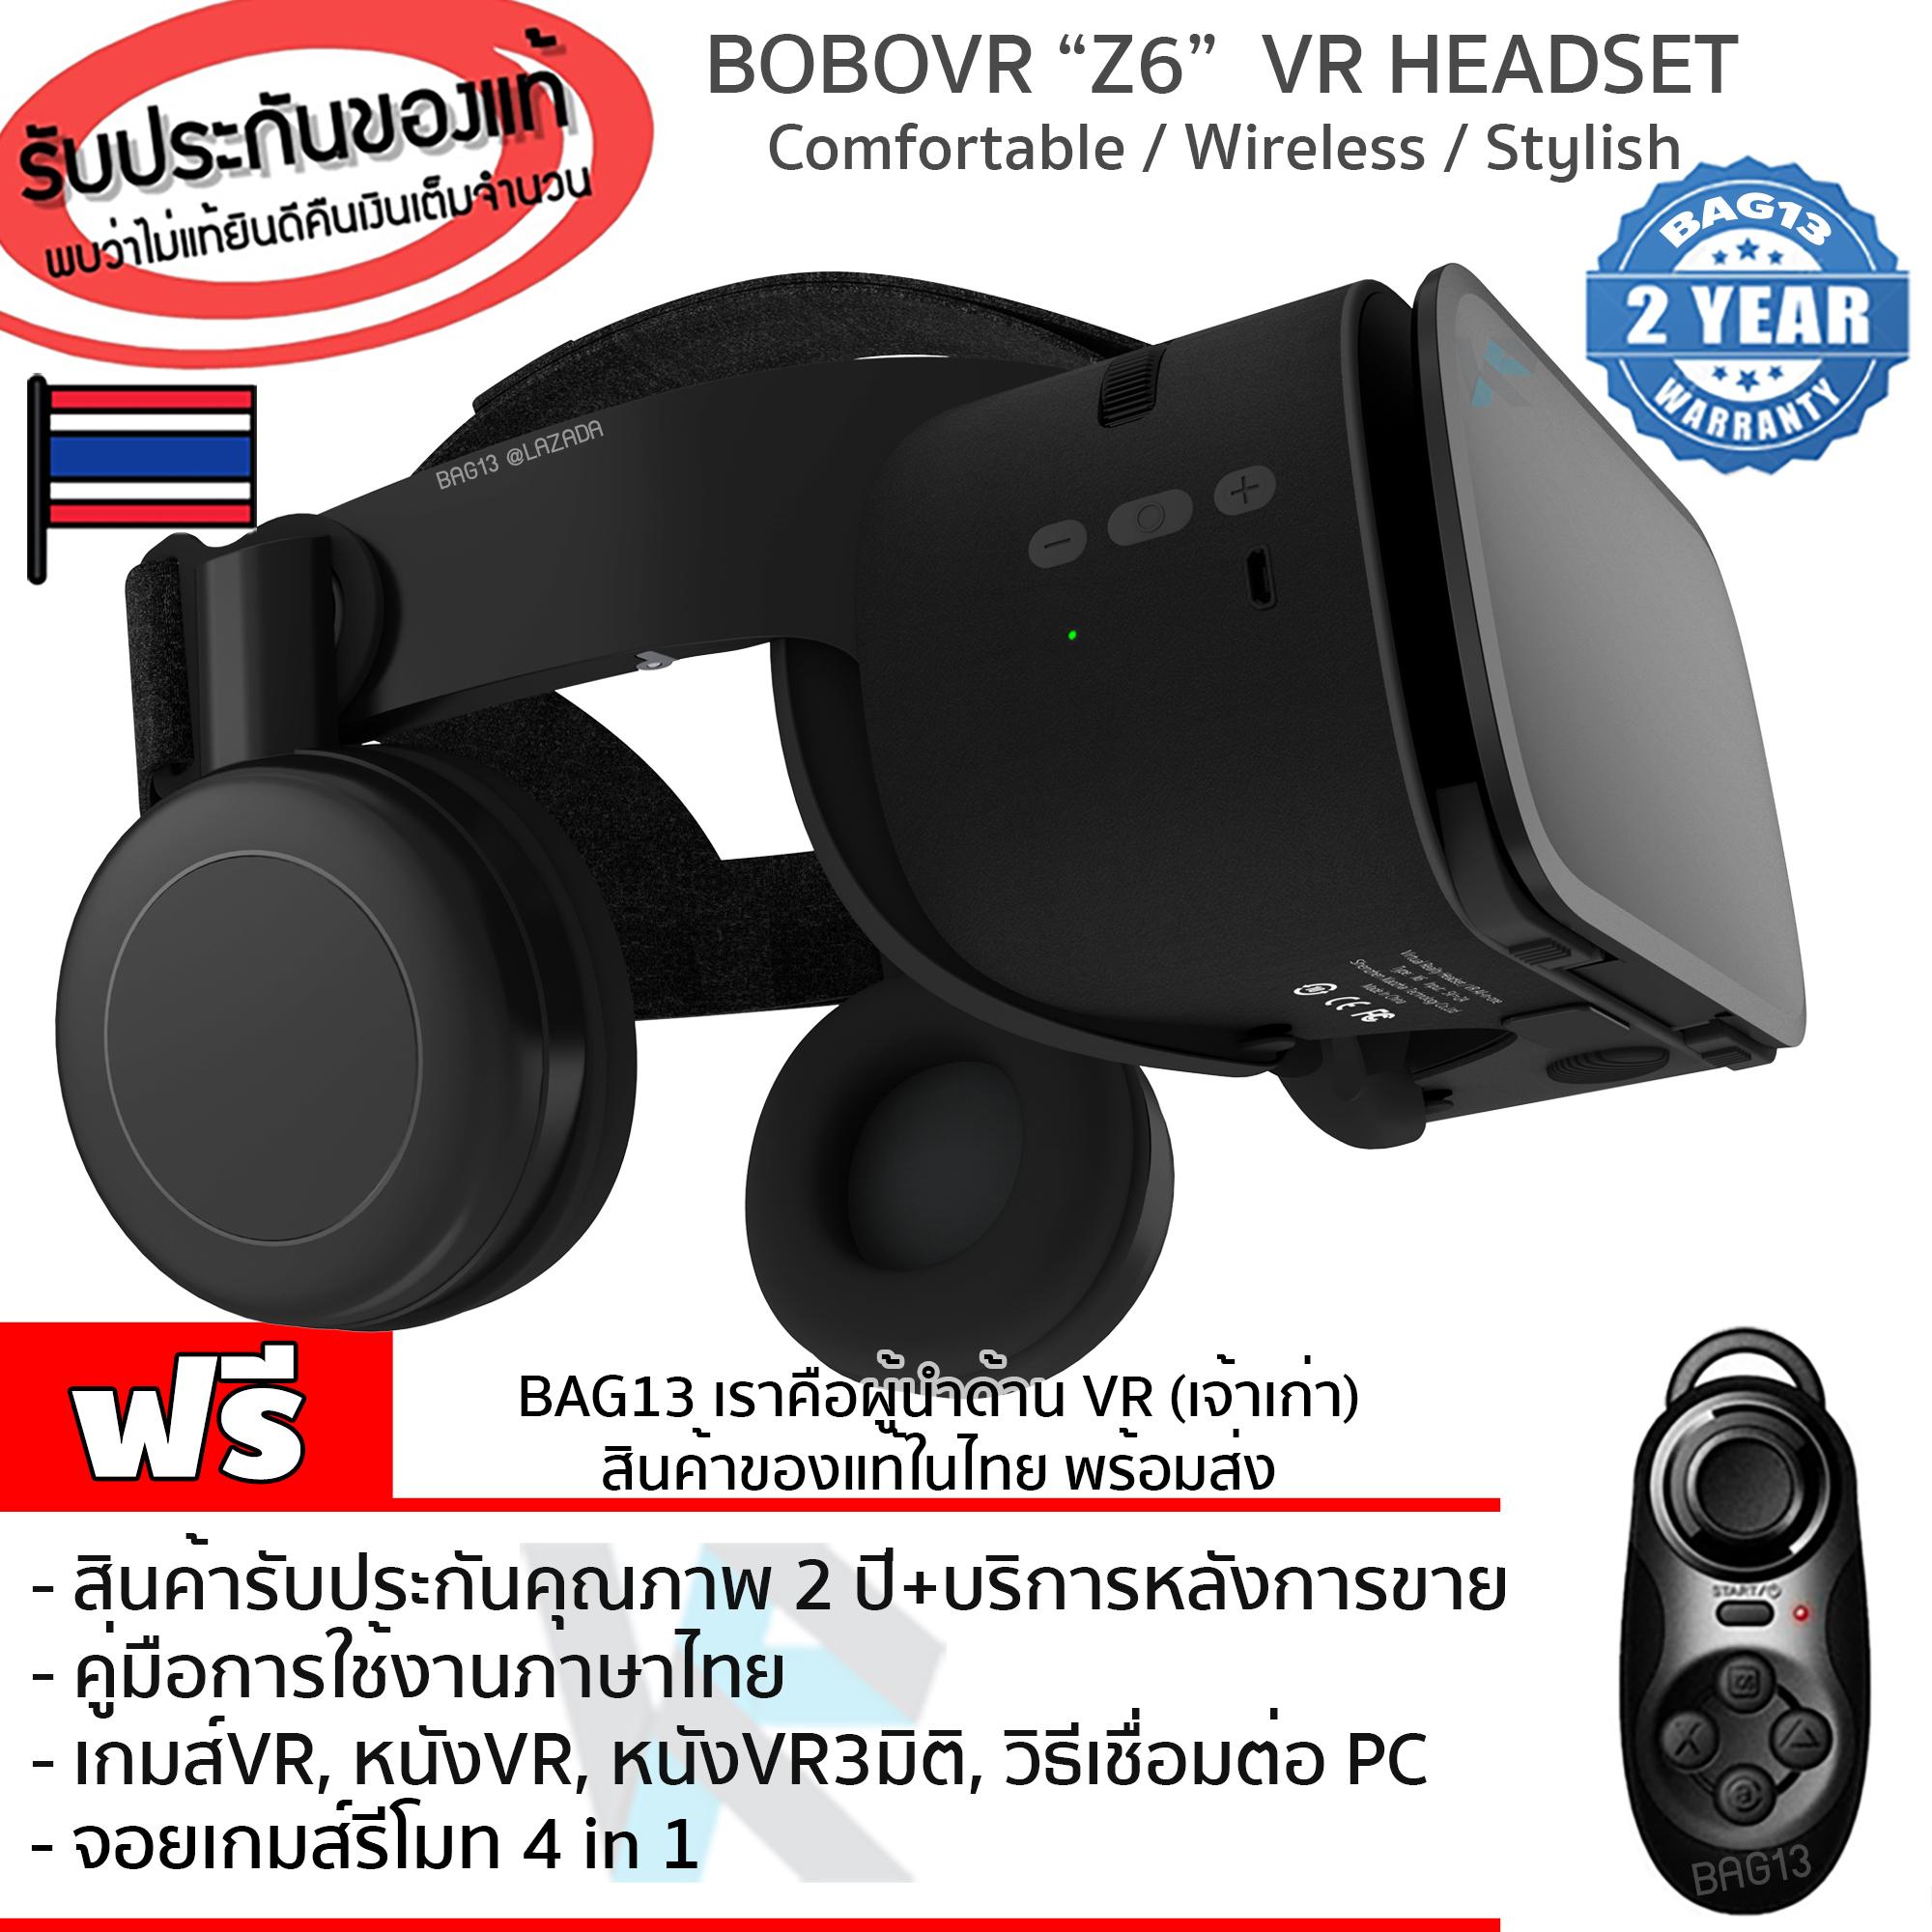 แว่นVR BOBOVR Z6 รุ่นใหม่ล่าสุด สุดยอดแว่นVR Headsetดีที่สุด ของแท้100% (Black Edition) 3D VR Glasses แว่นตาดูหนัง 3D อัจฉริยะ สำหรับโทรศัพท์สมาร์ทโฟนทุกรุ่น(สีดำ) แถมฟรี 4 in 1 Bluetooth Wireless Selfie, Joystick, Mouse ,Remote